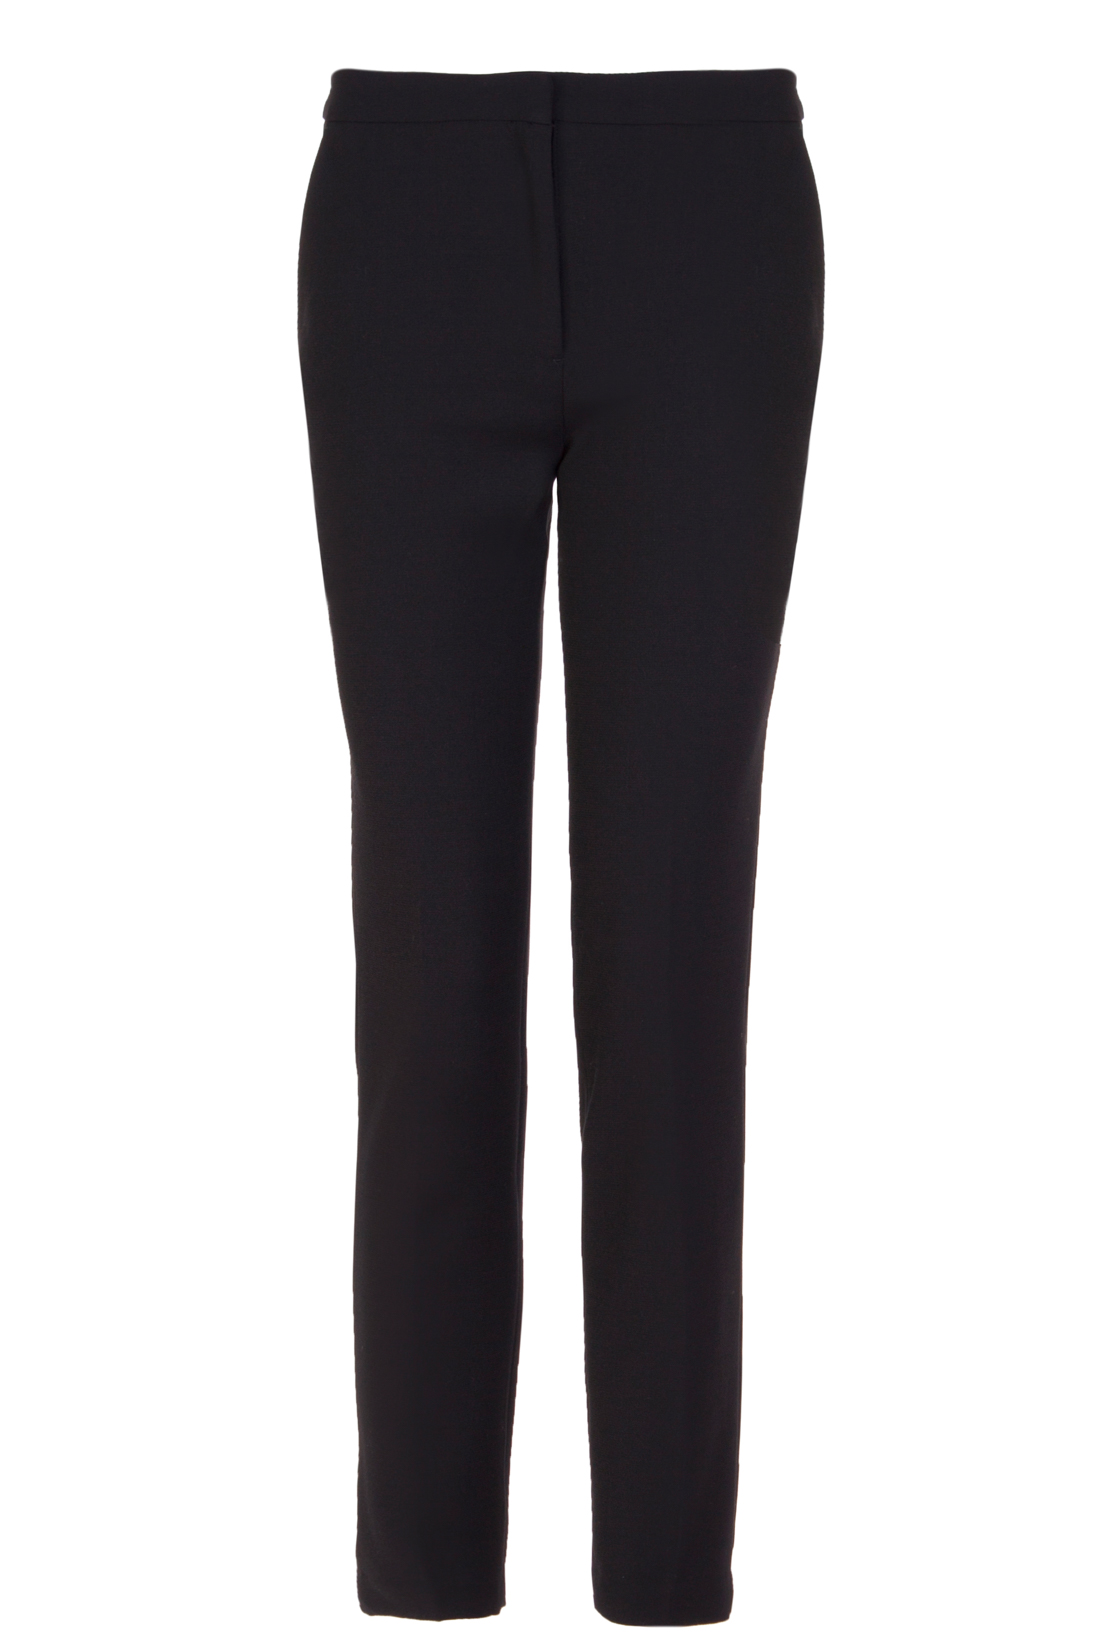 Классические чёрные брюки (арт. baon B297007), размер L, цвет черный Классические чёрные брюки (арт. baon B297007) - фото 3